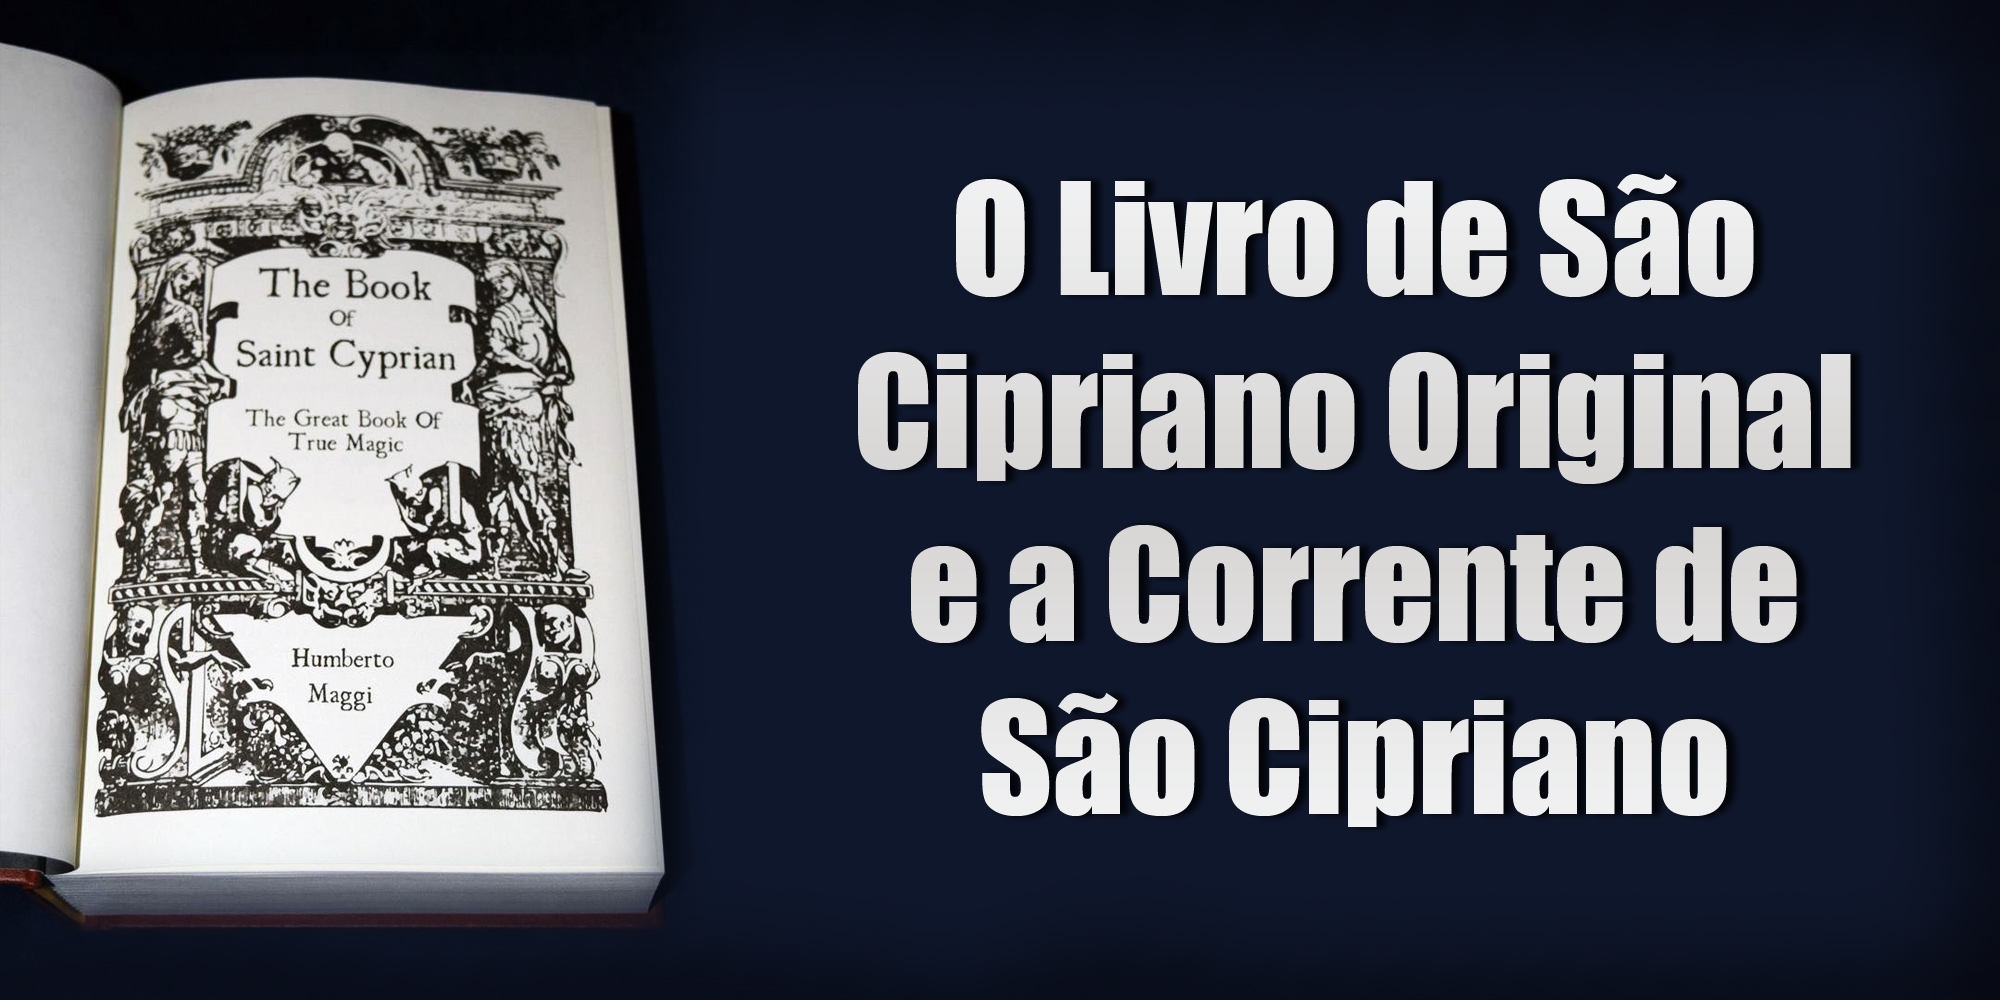 O Livro de São Cipriano Original e a Corrente de São Cipriano